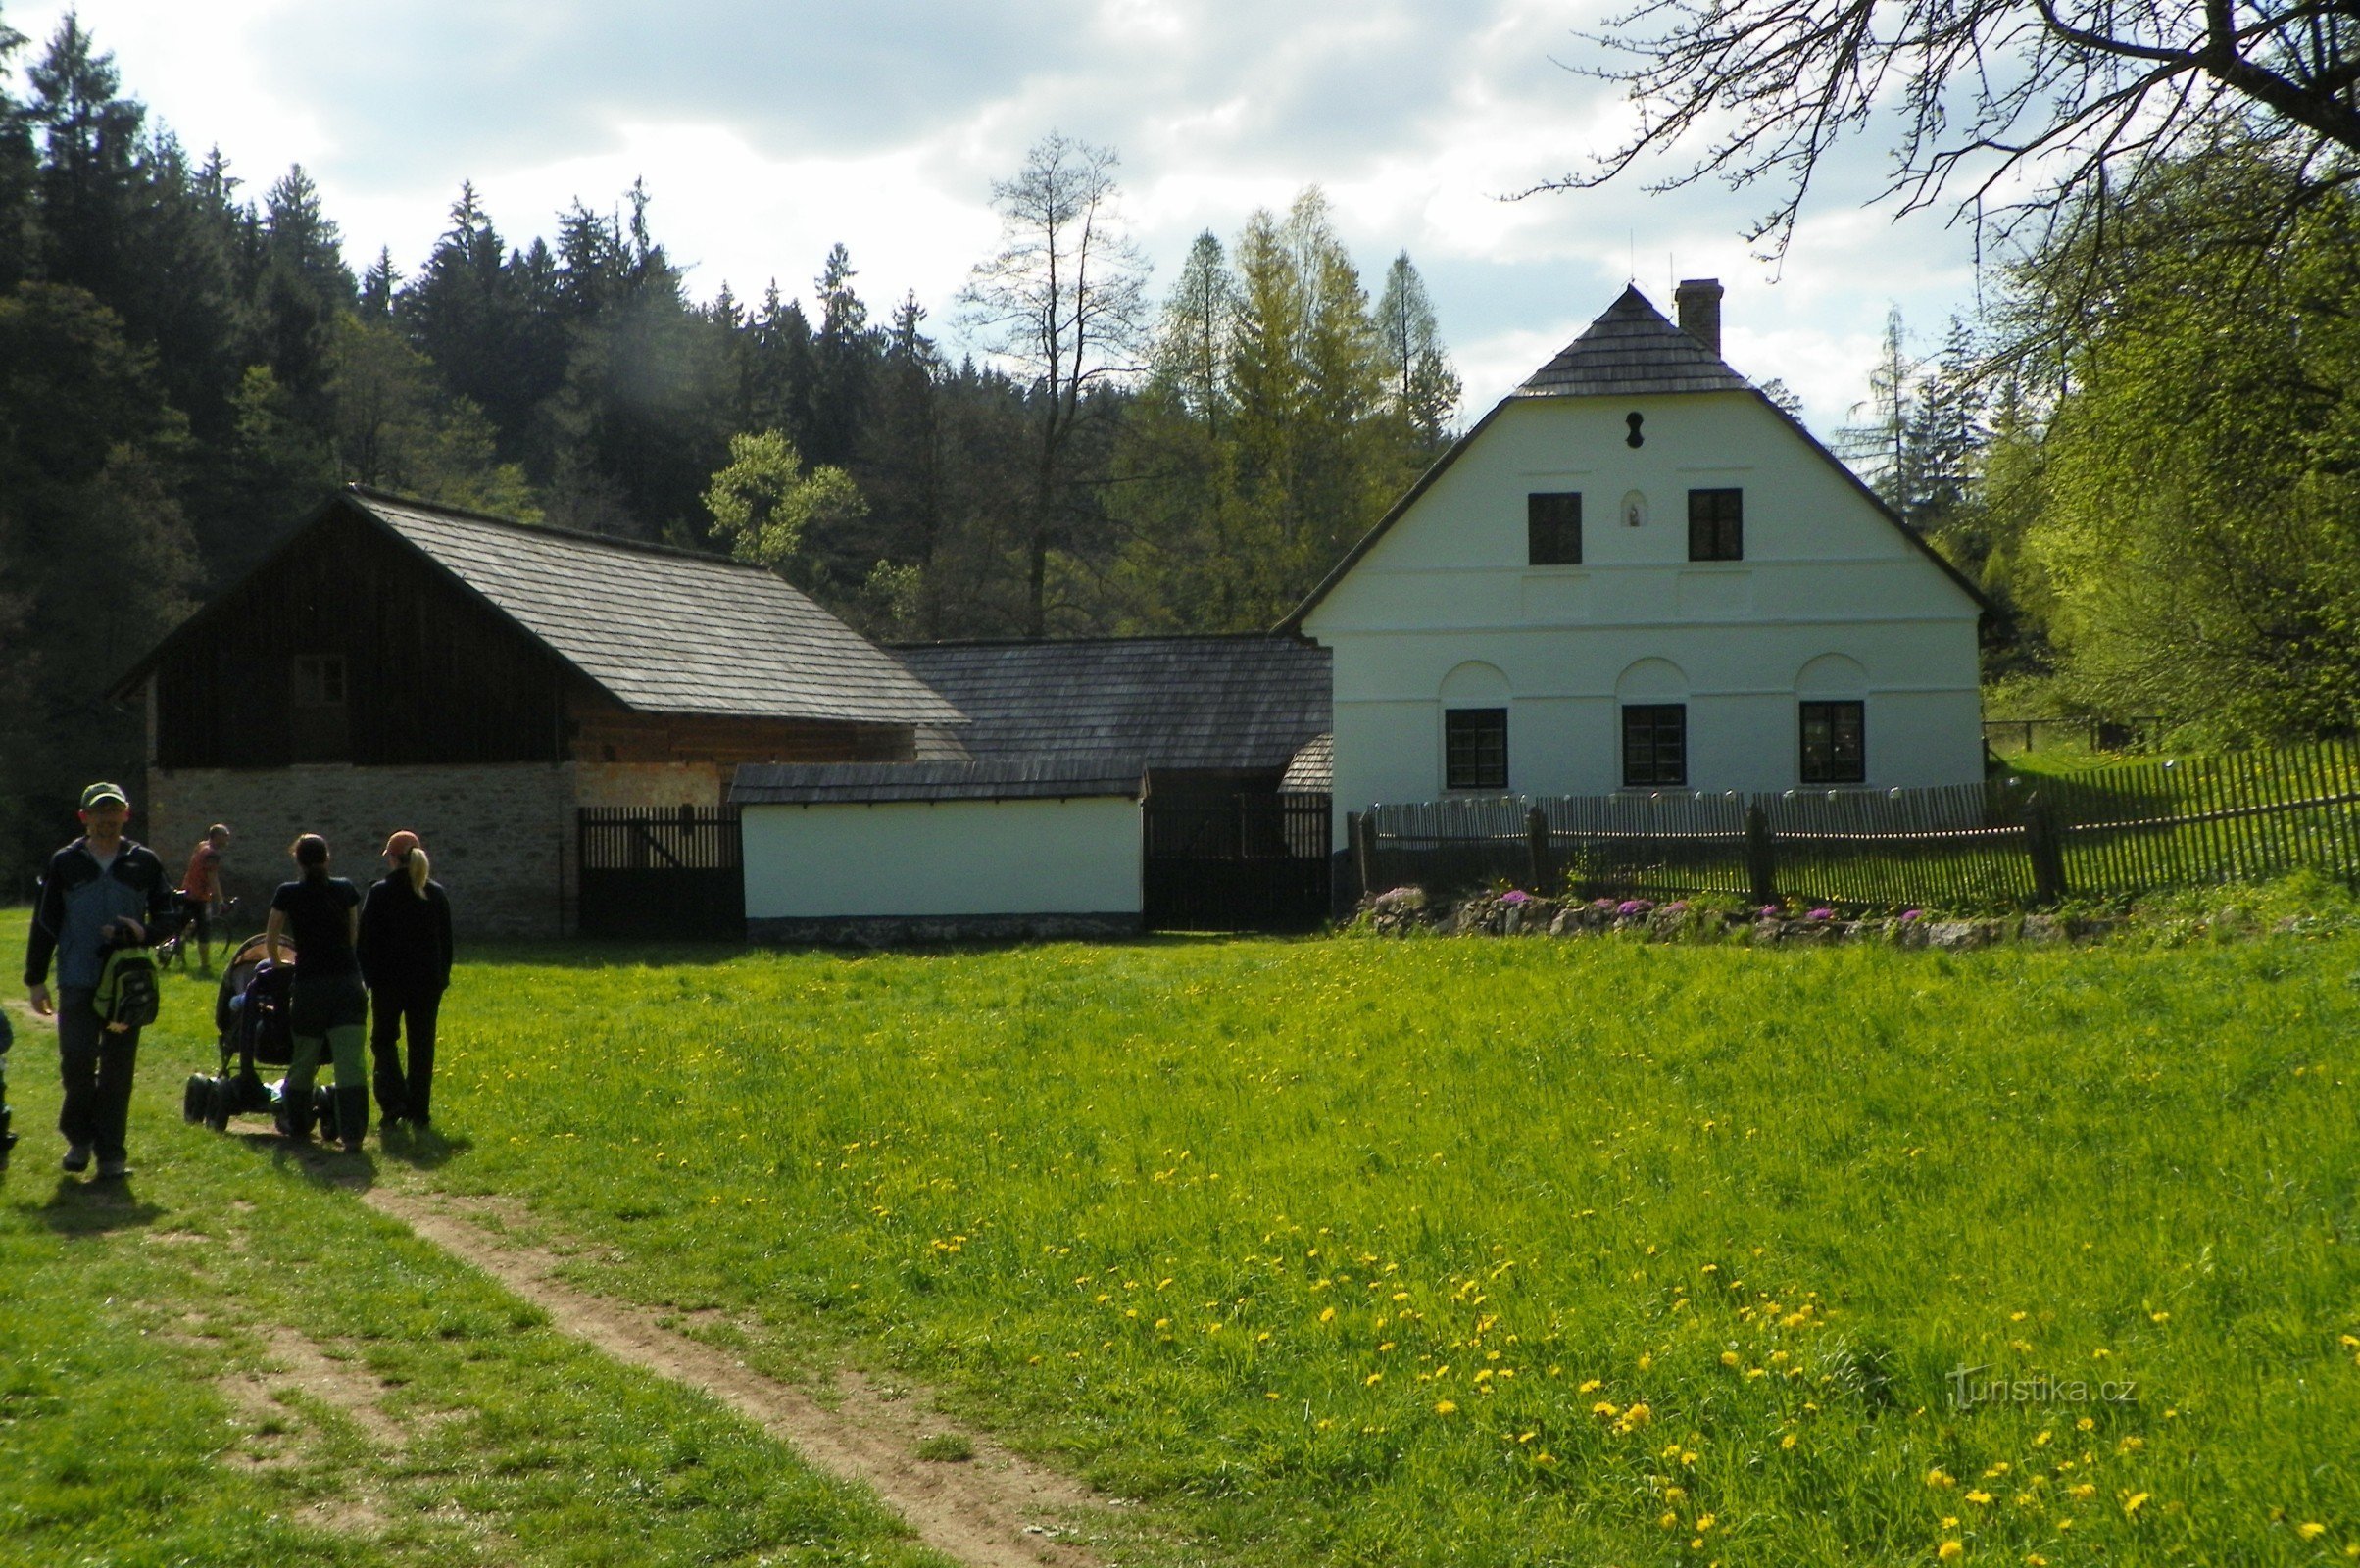 Brdříček's mill